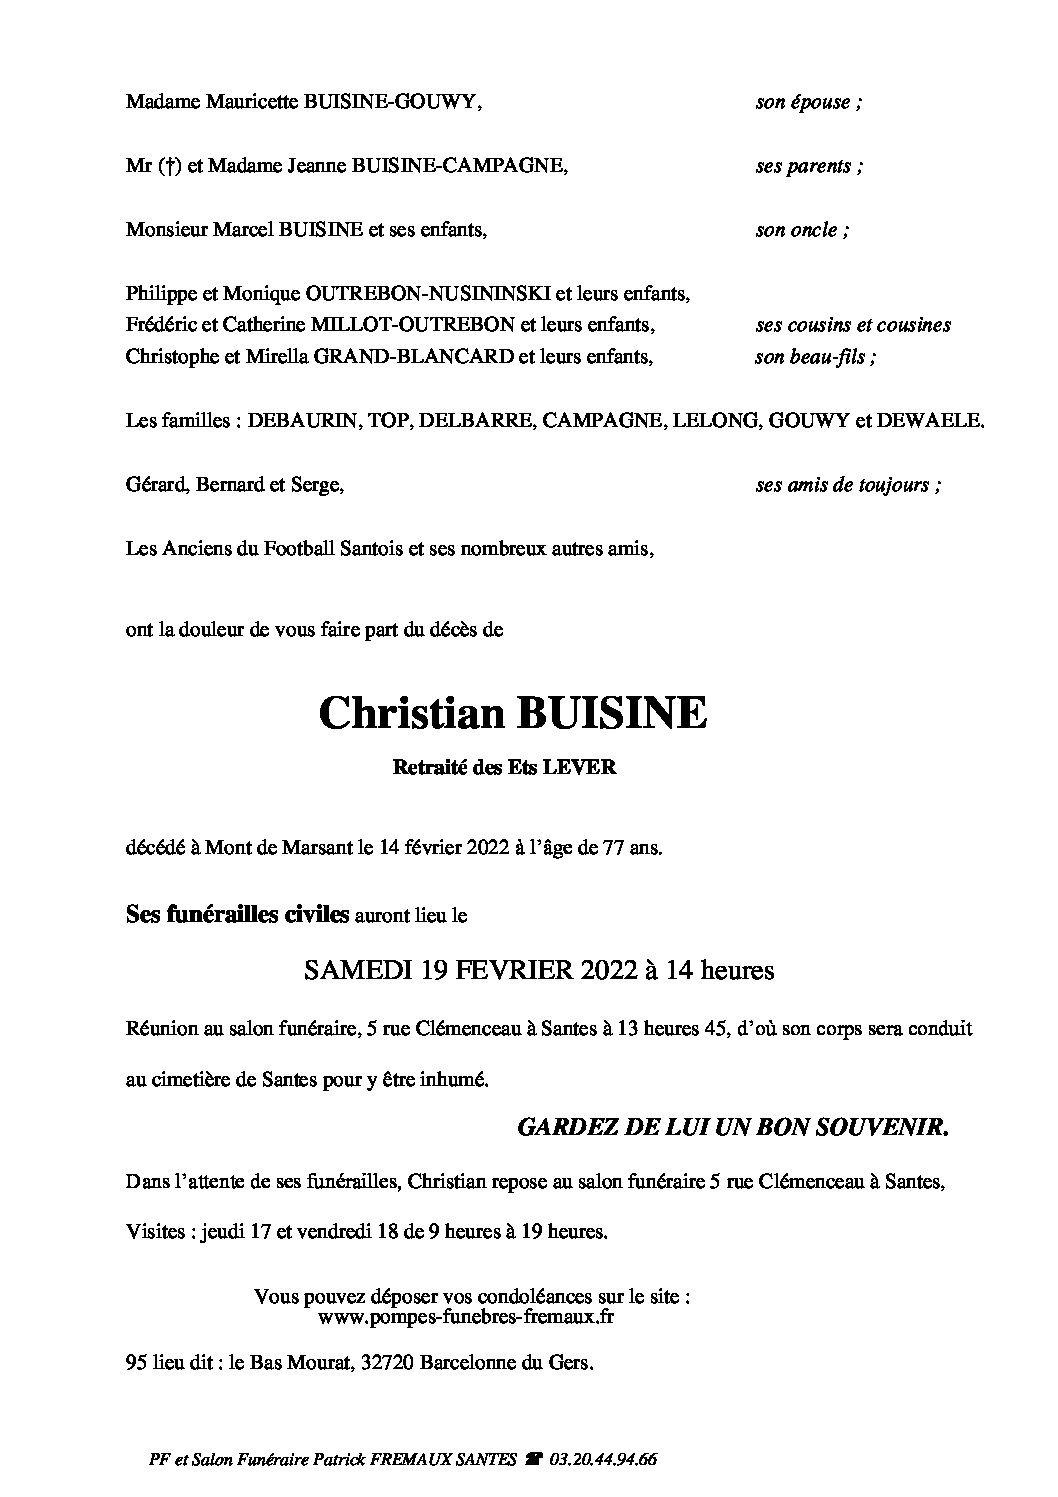 Monsieur Christian BUISINE